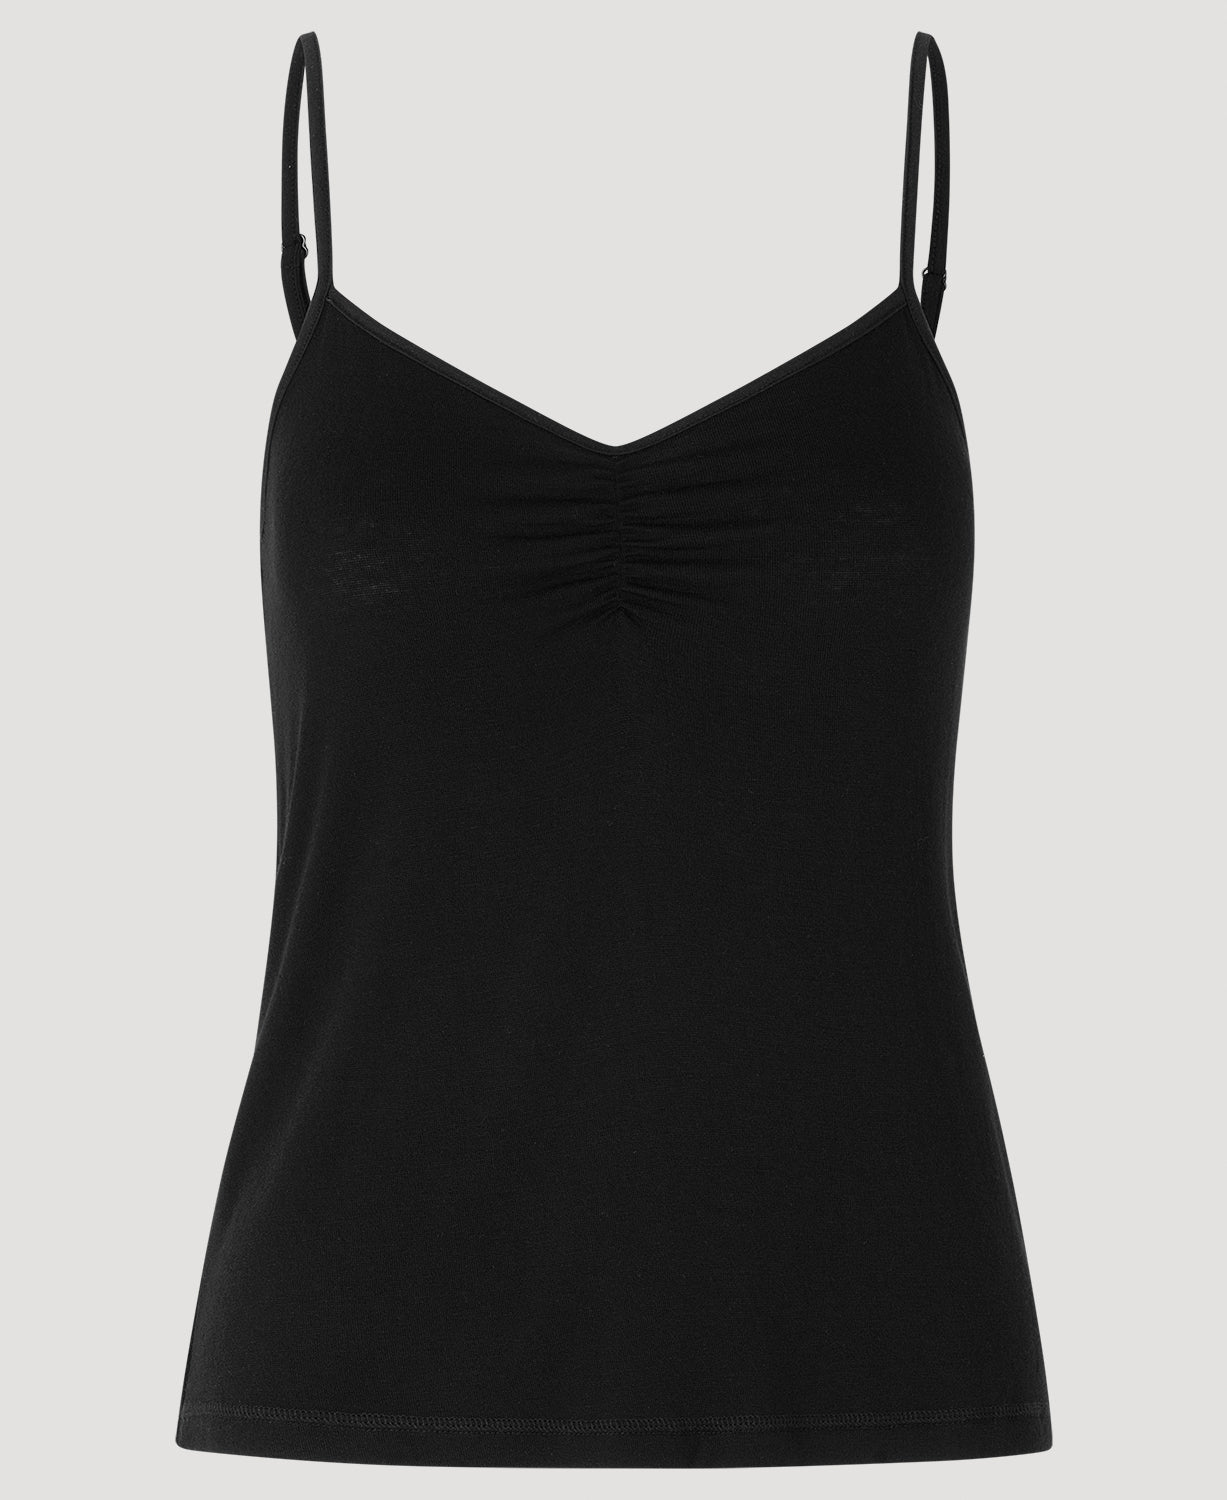 FeLina ~ 80940 ~ Black ~ Posh Lacy Camisole ~ Lingerie/Sleepwear ~ Size S ~  New - KIADA